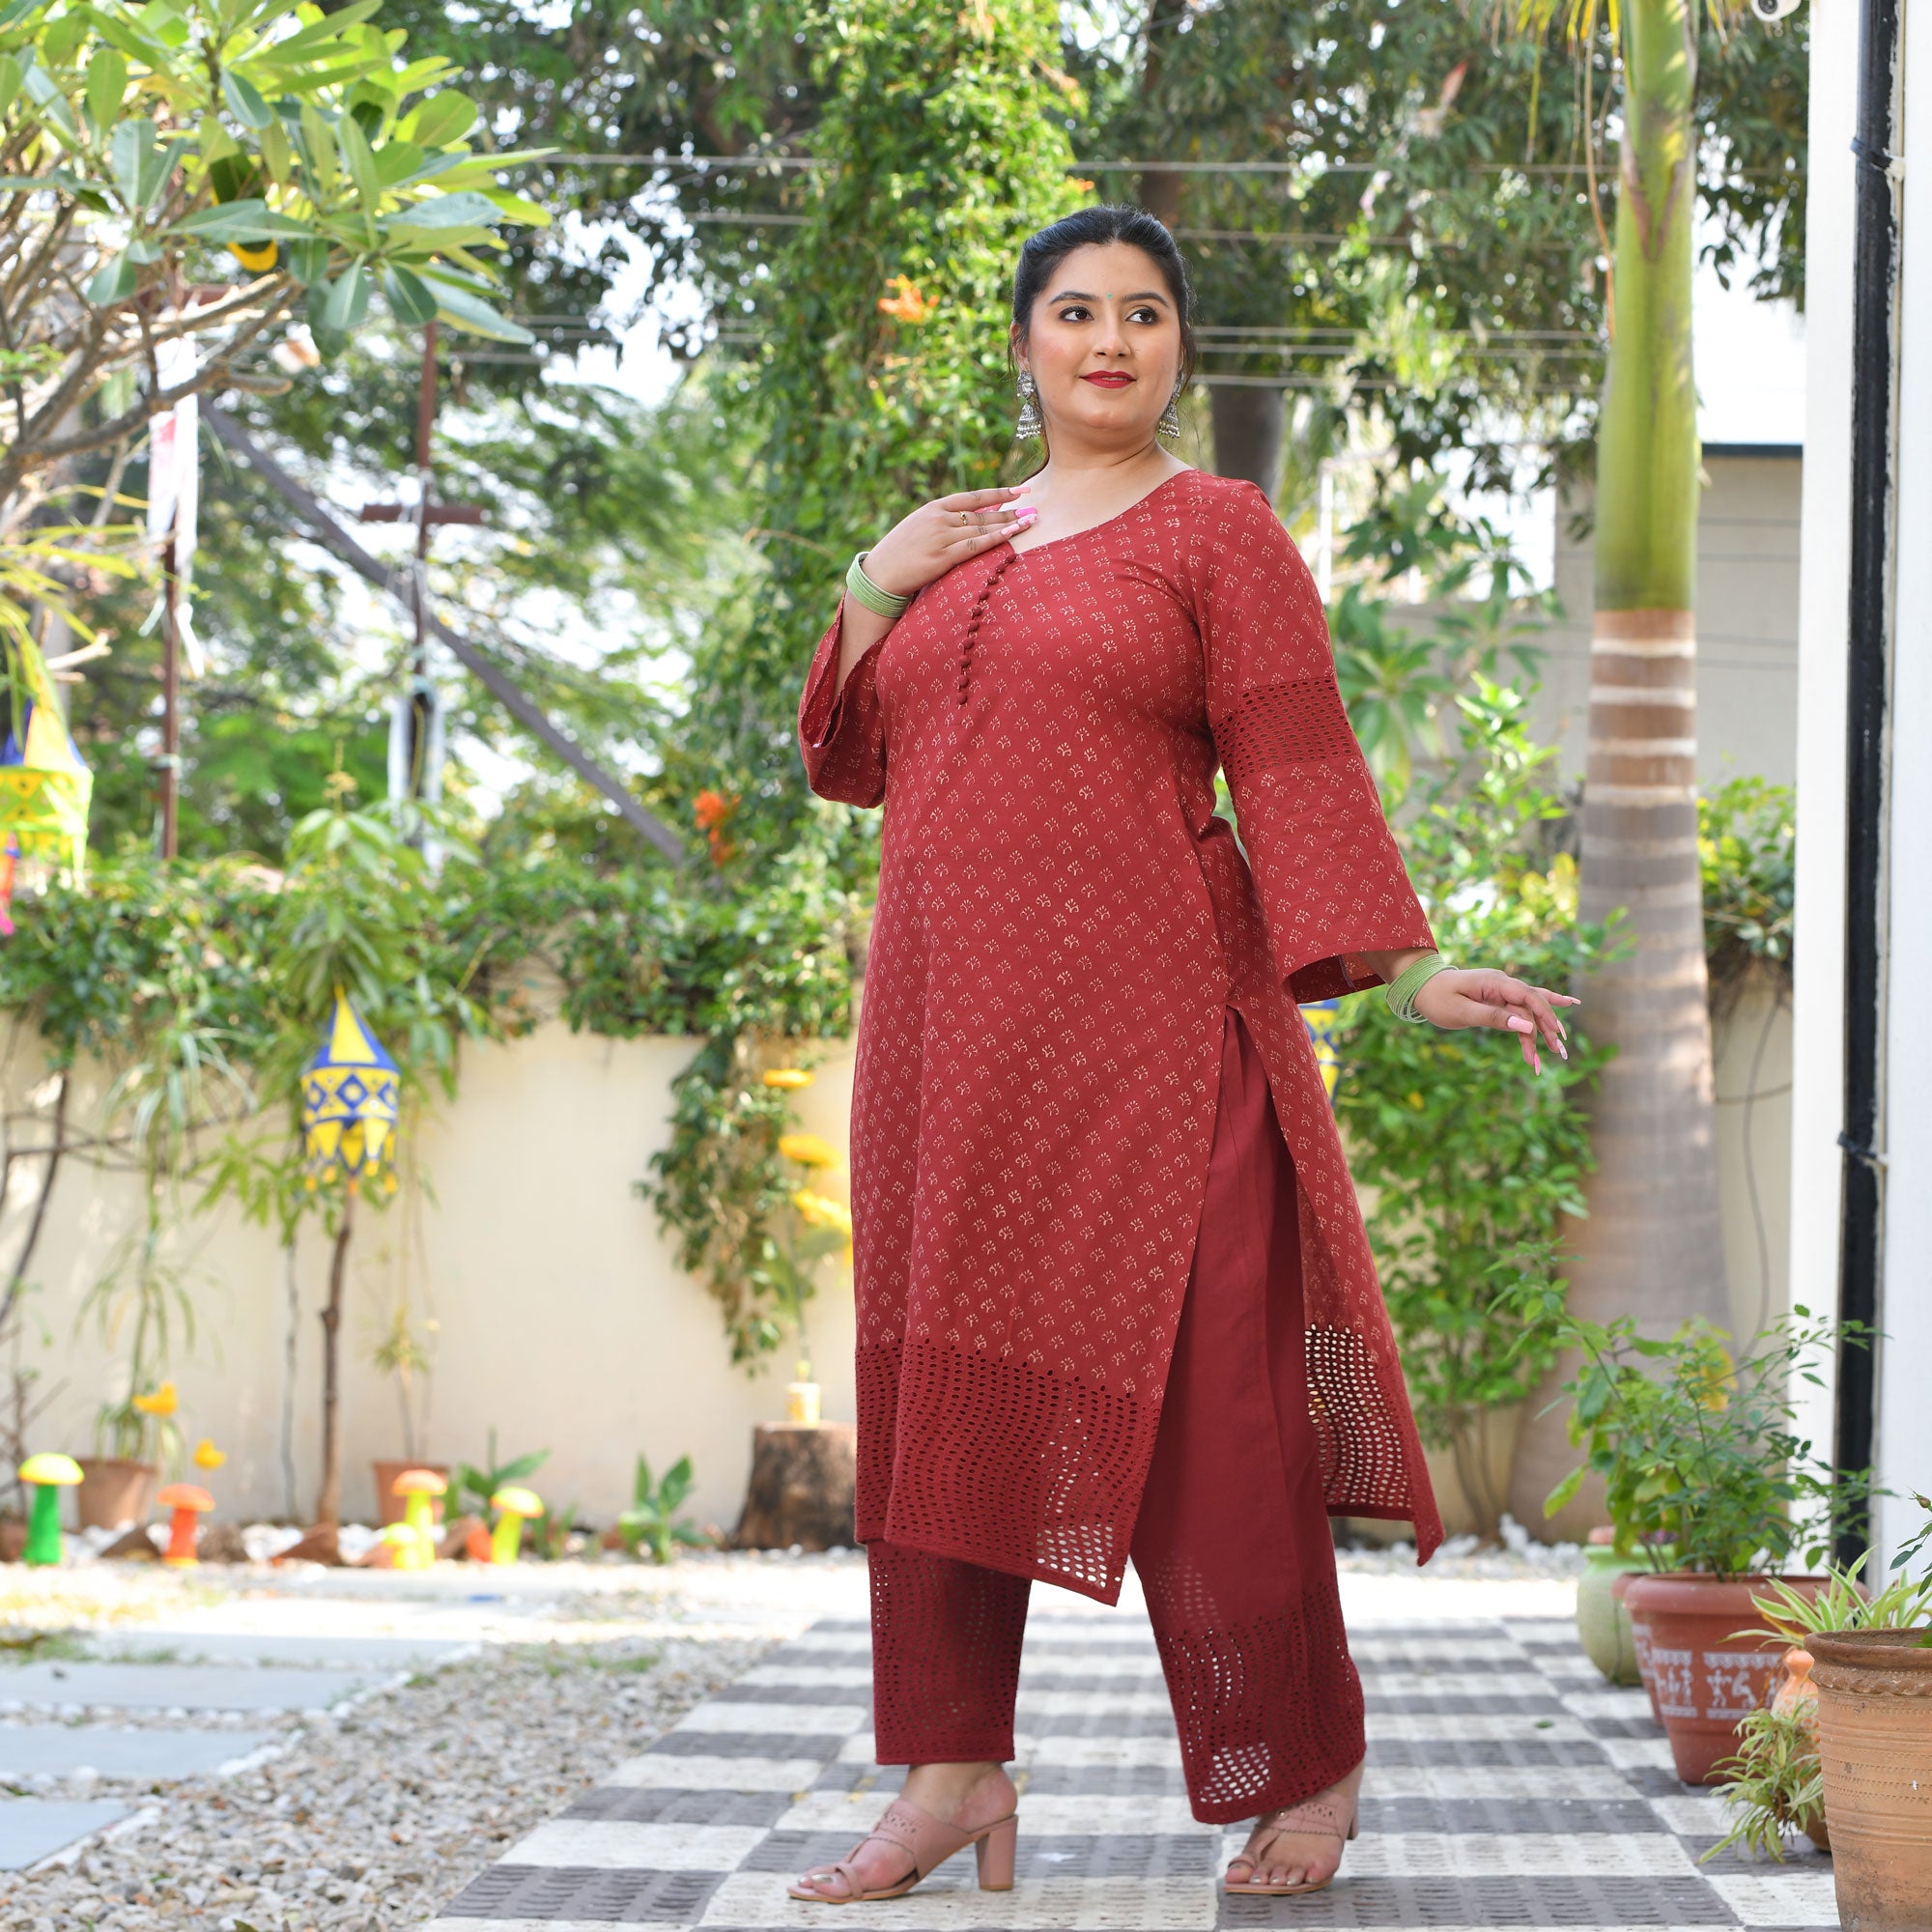 Lucknow Chikankari Suits - Gota Patti Chikankari Suit BUY ONLINE:  https://www.dress365days.com/Pure-Georgette-Chikankari-Suits/Maroonish-Red- Chikankari-Suit-with-Gotta-Patti-Daaman---Kurta-and-Dupatta--id-4028081.html  | Facebook